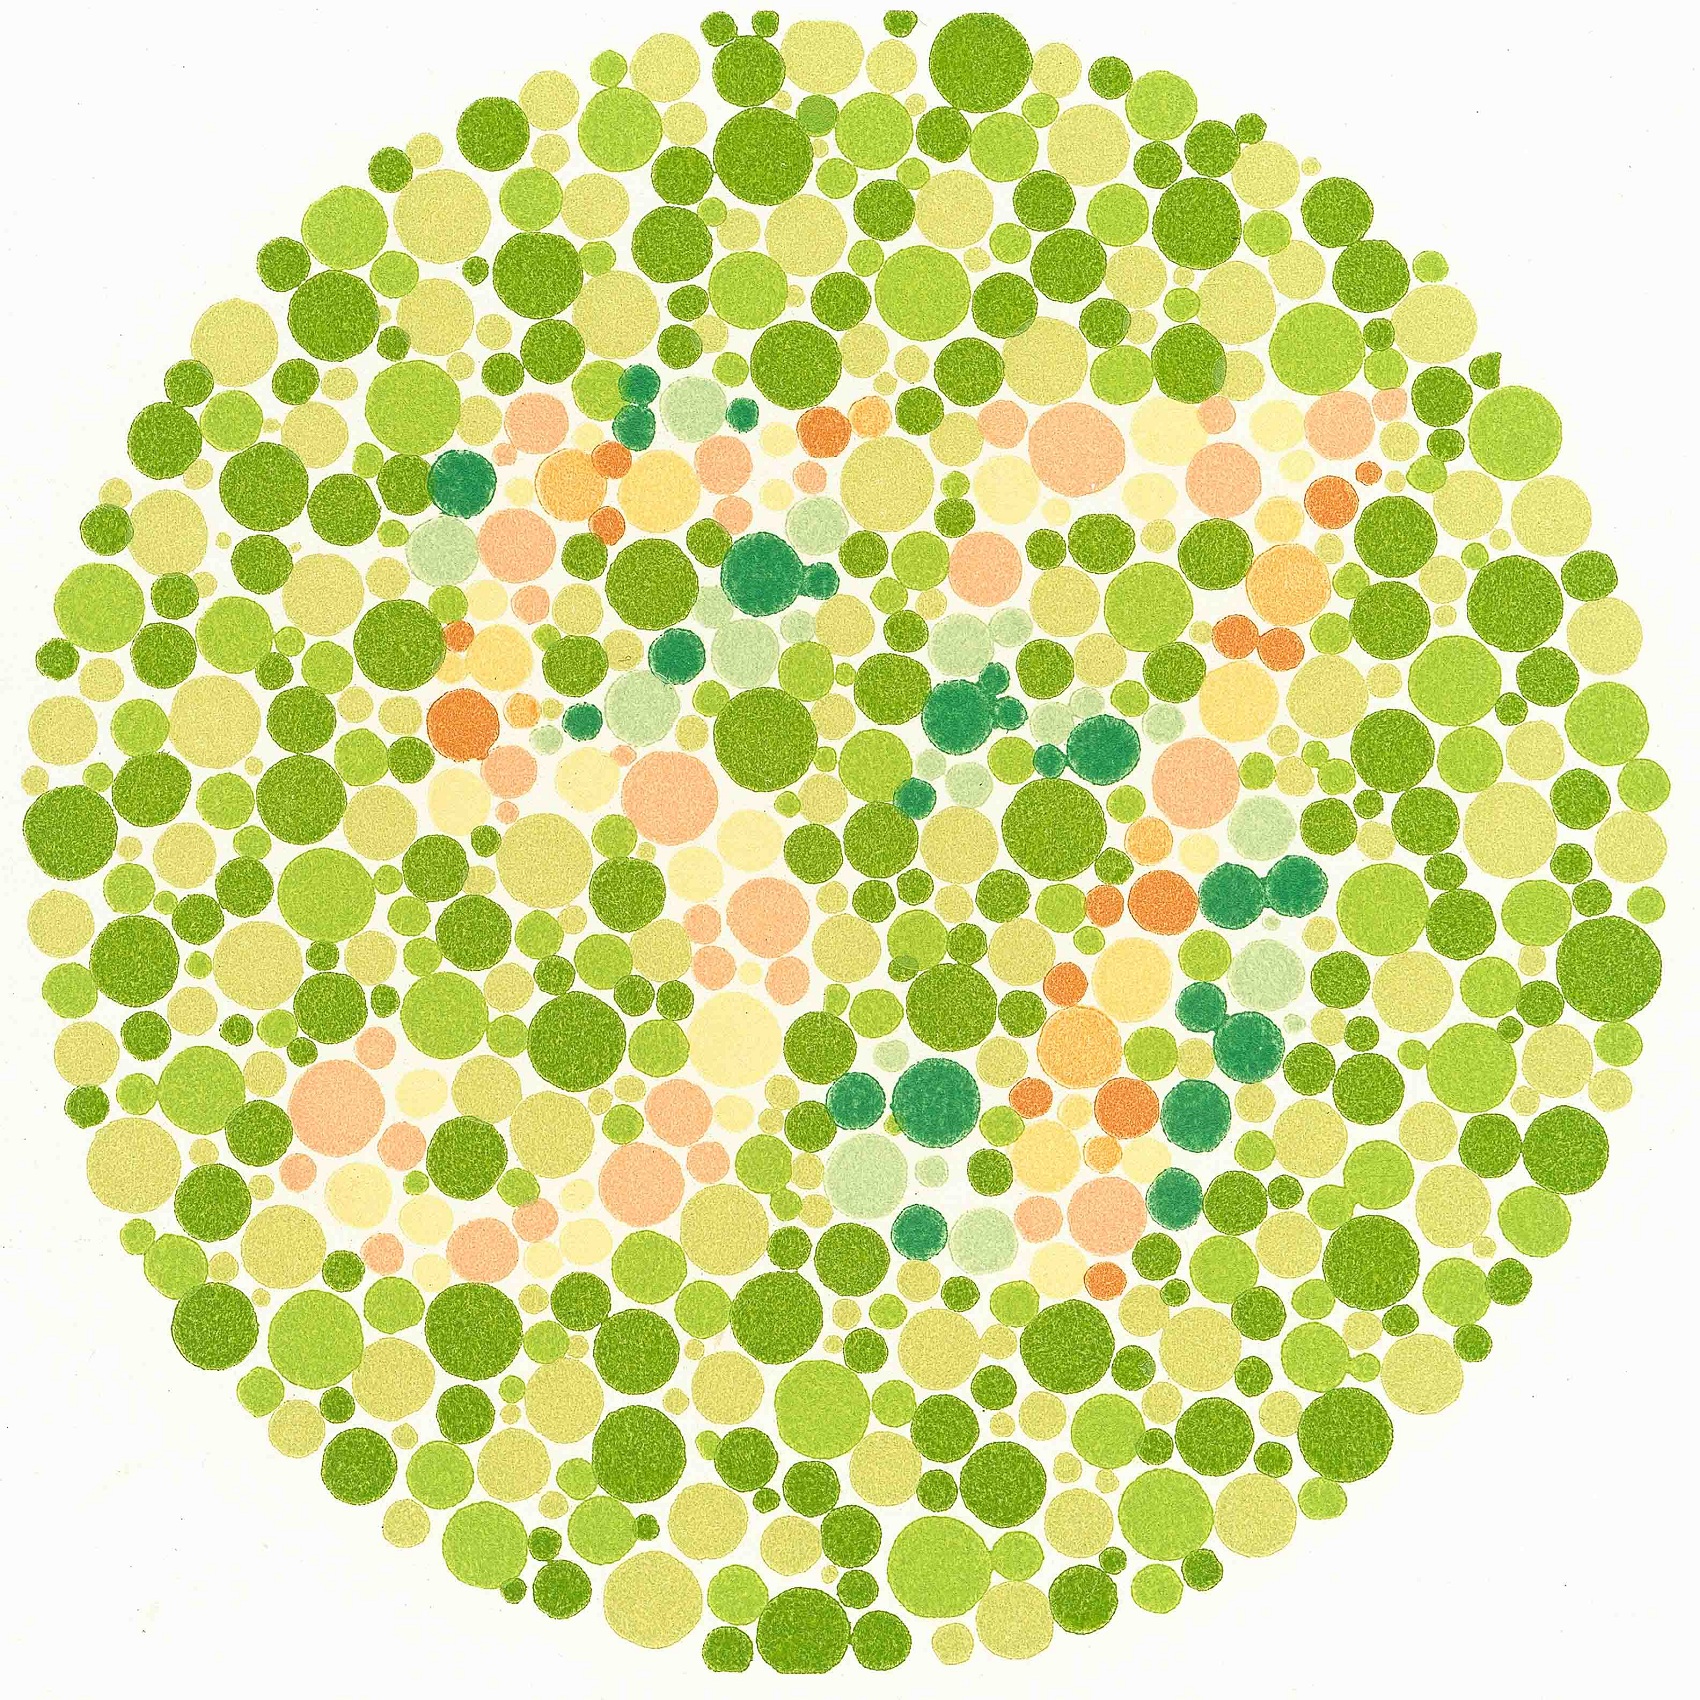 apple color blind test